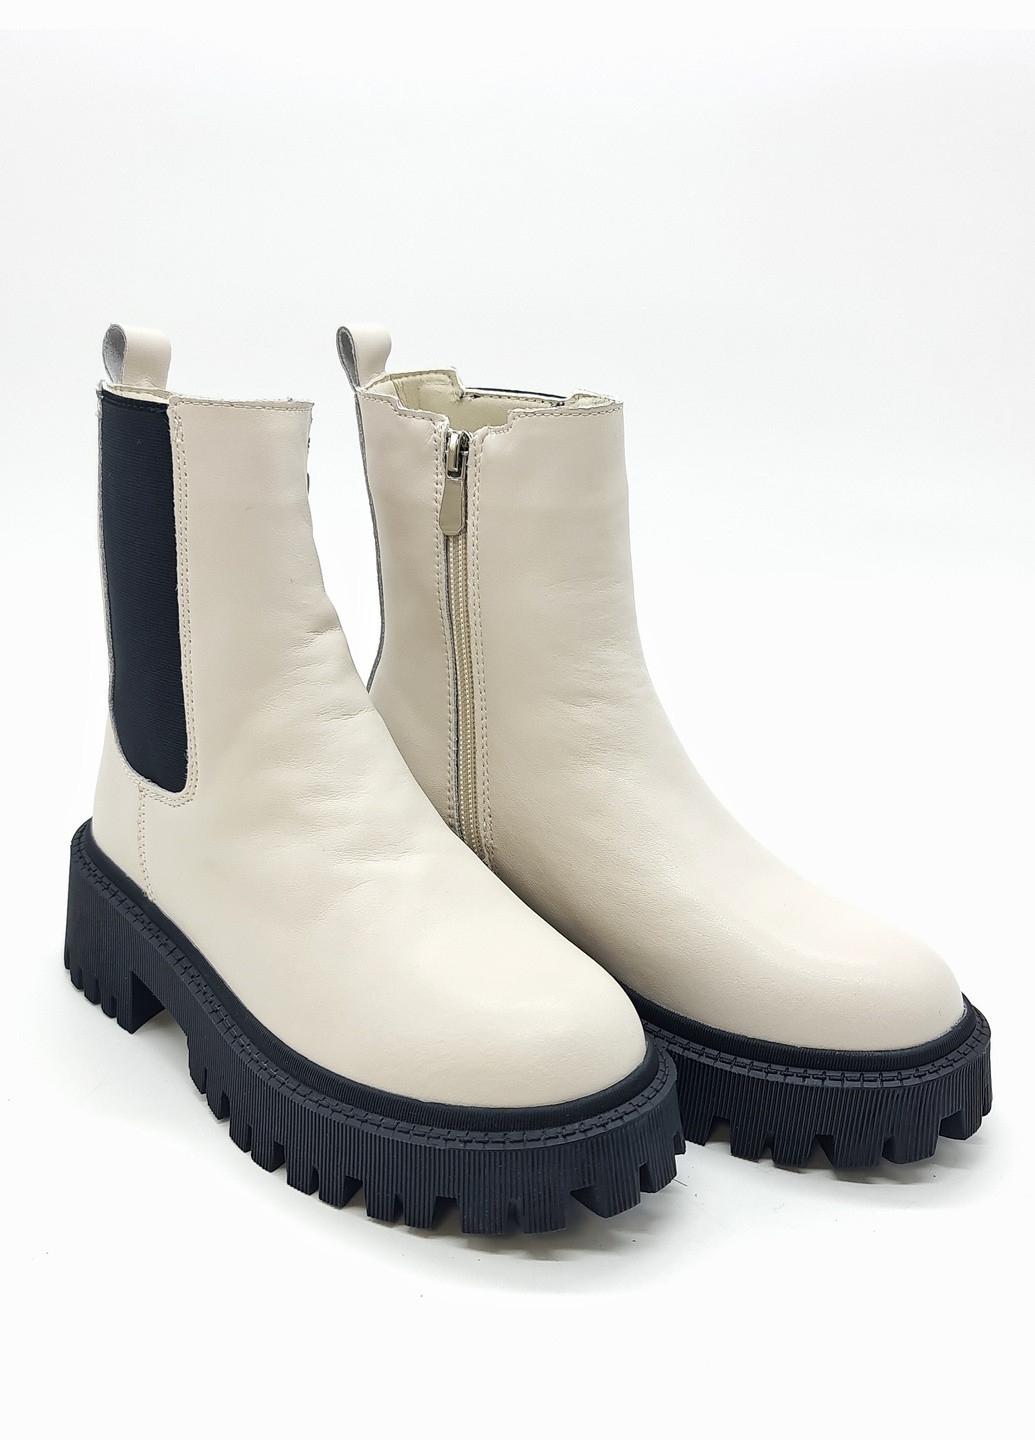 Осенние женские ботинки зимние бежевые кожаные ii-11-11 23 см(р) It is